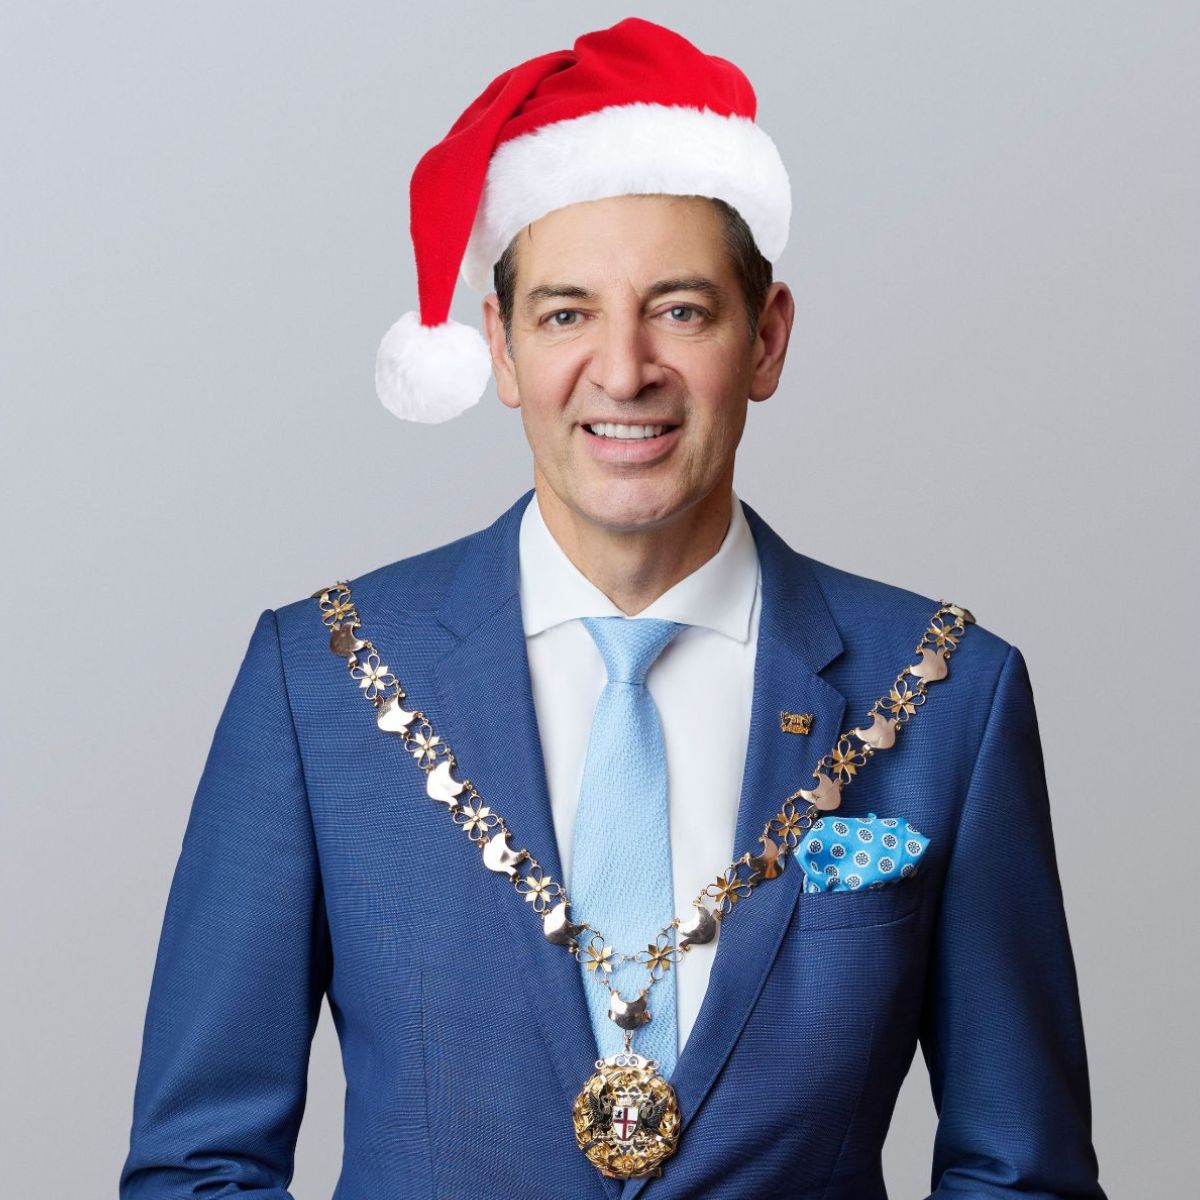 Lord Mayor Basil Zempilas wearing a santa hat